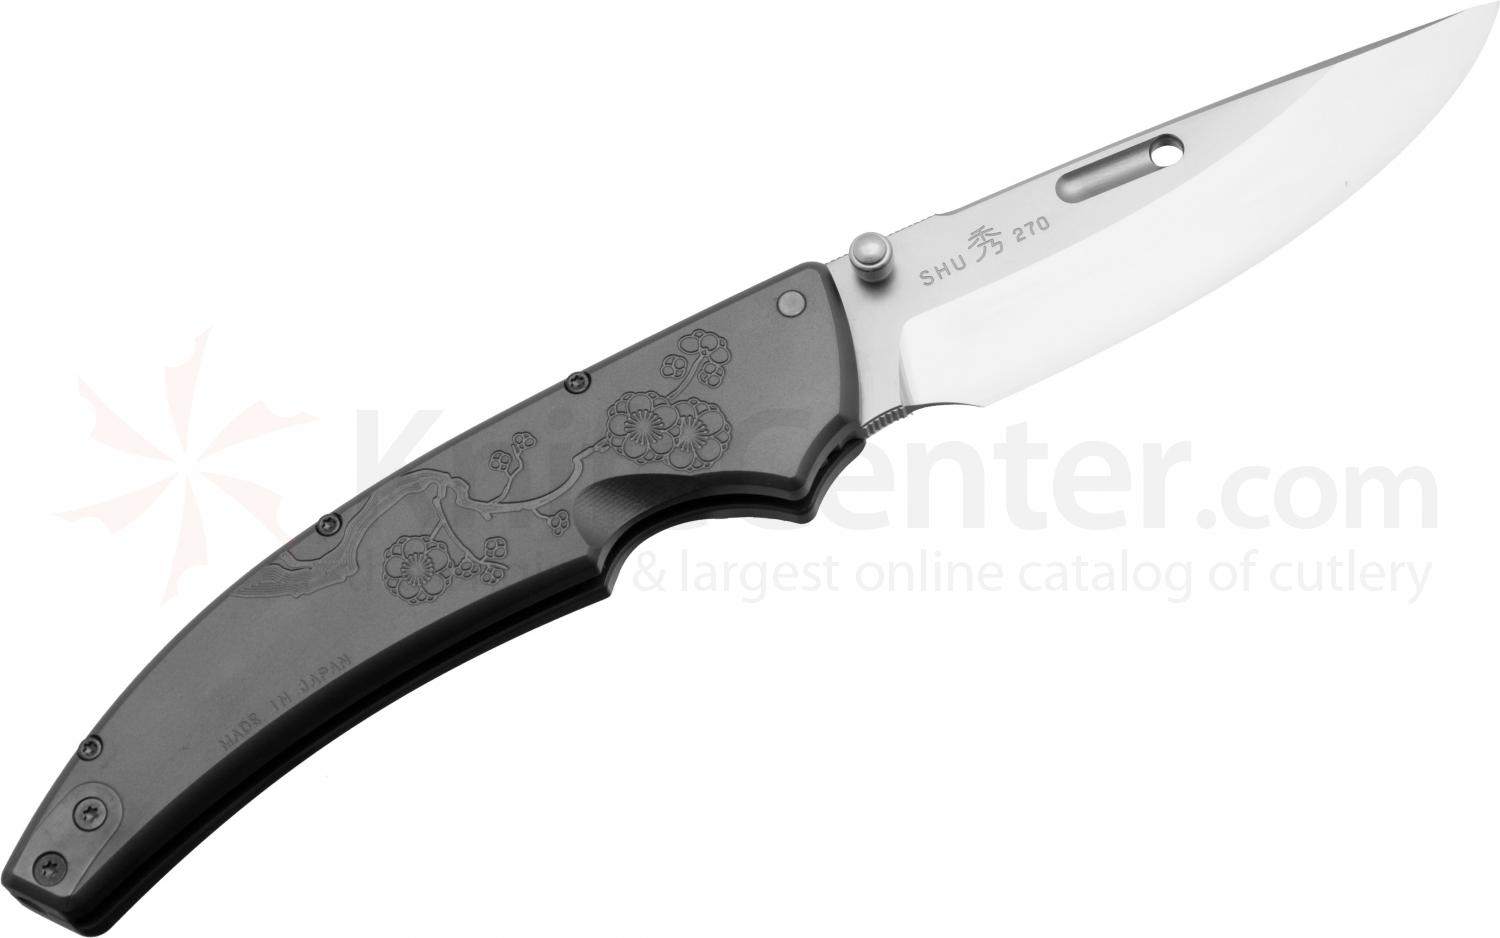 Складной нож Rockstead RK SHU CB-ZDP (UME) купить по оптимальной цене,  доставка по России, гарантия качества